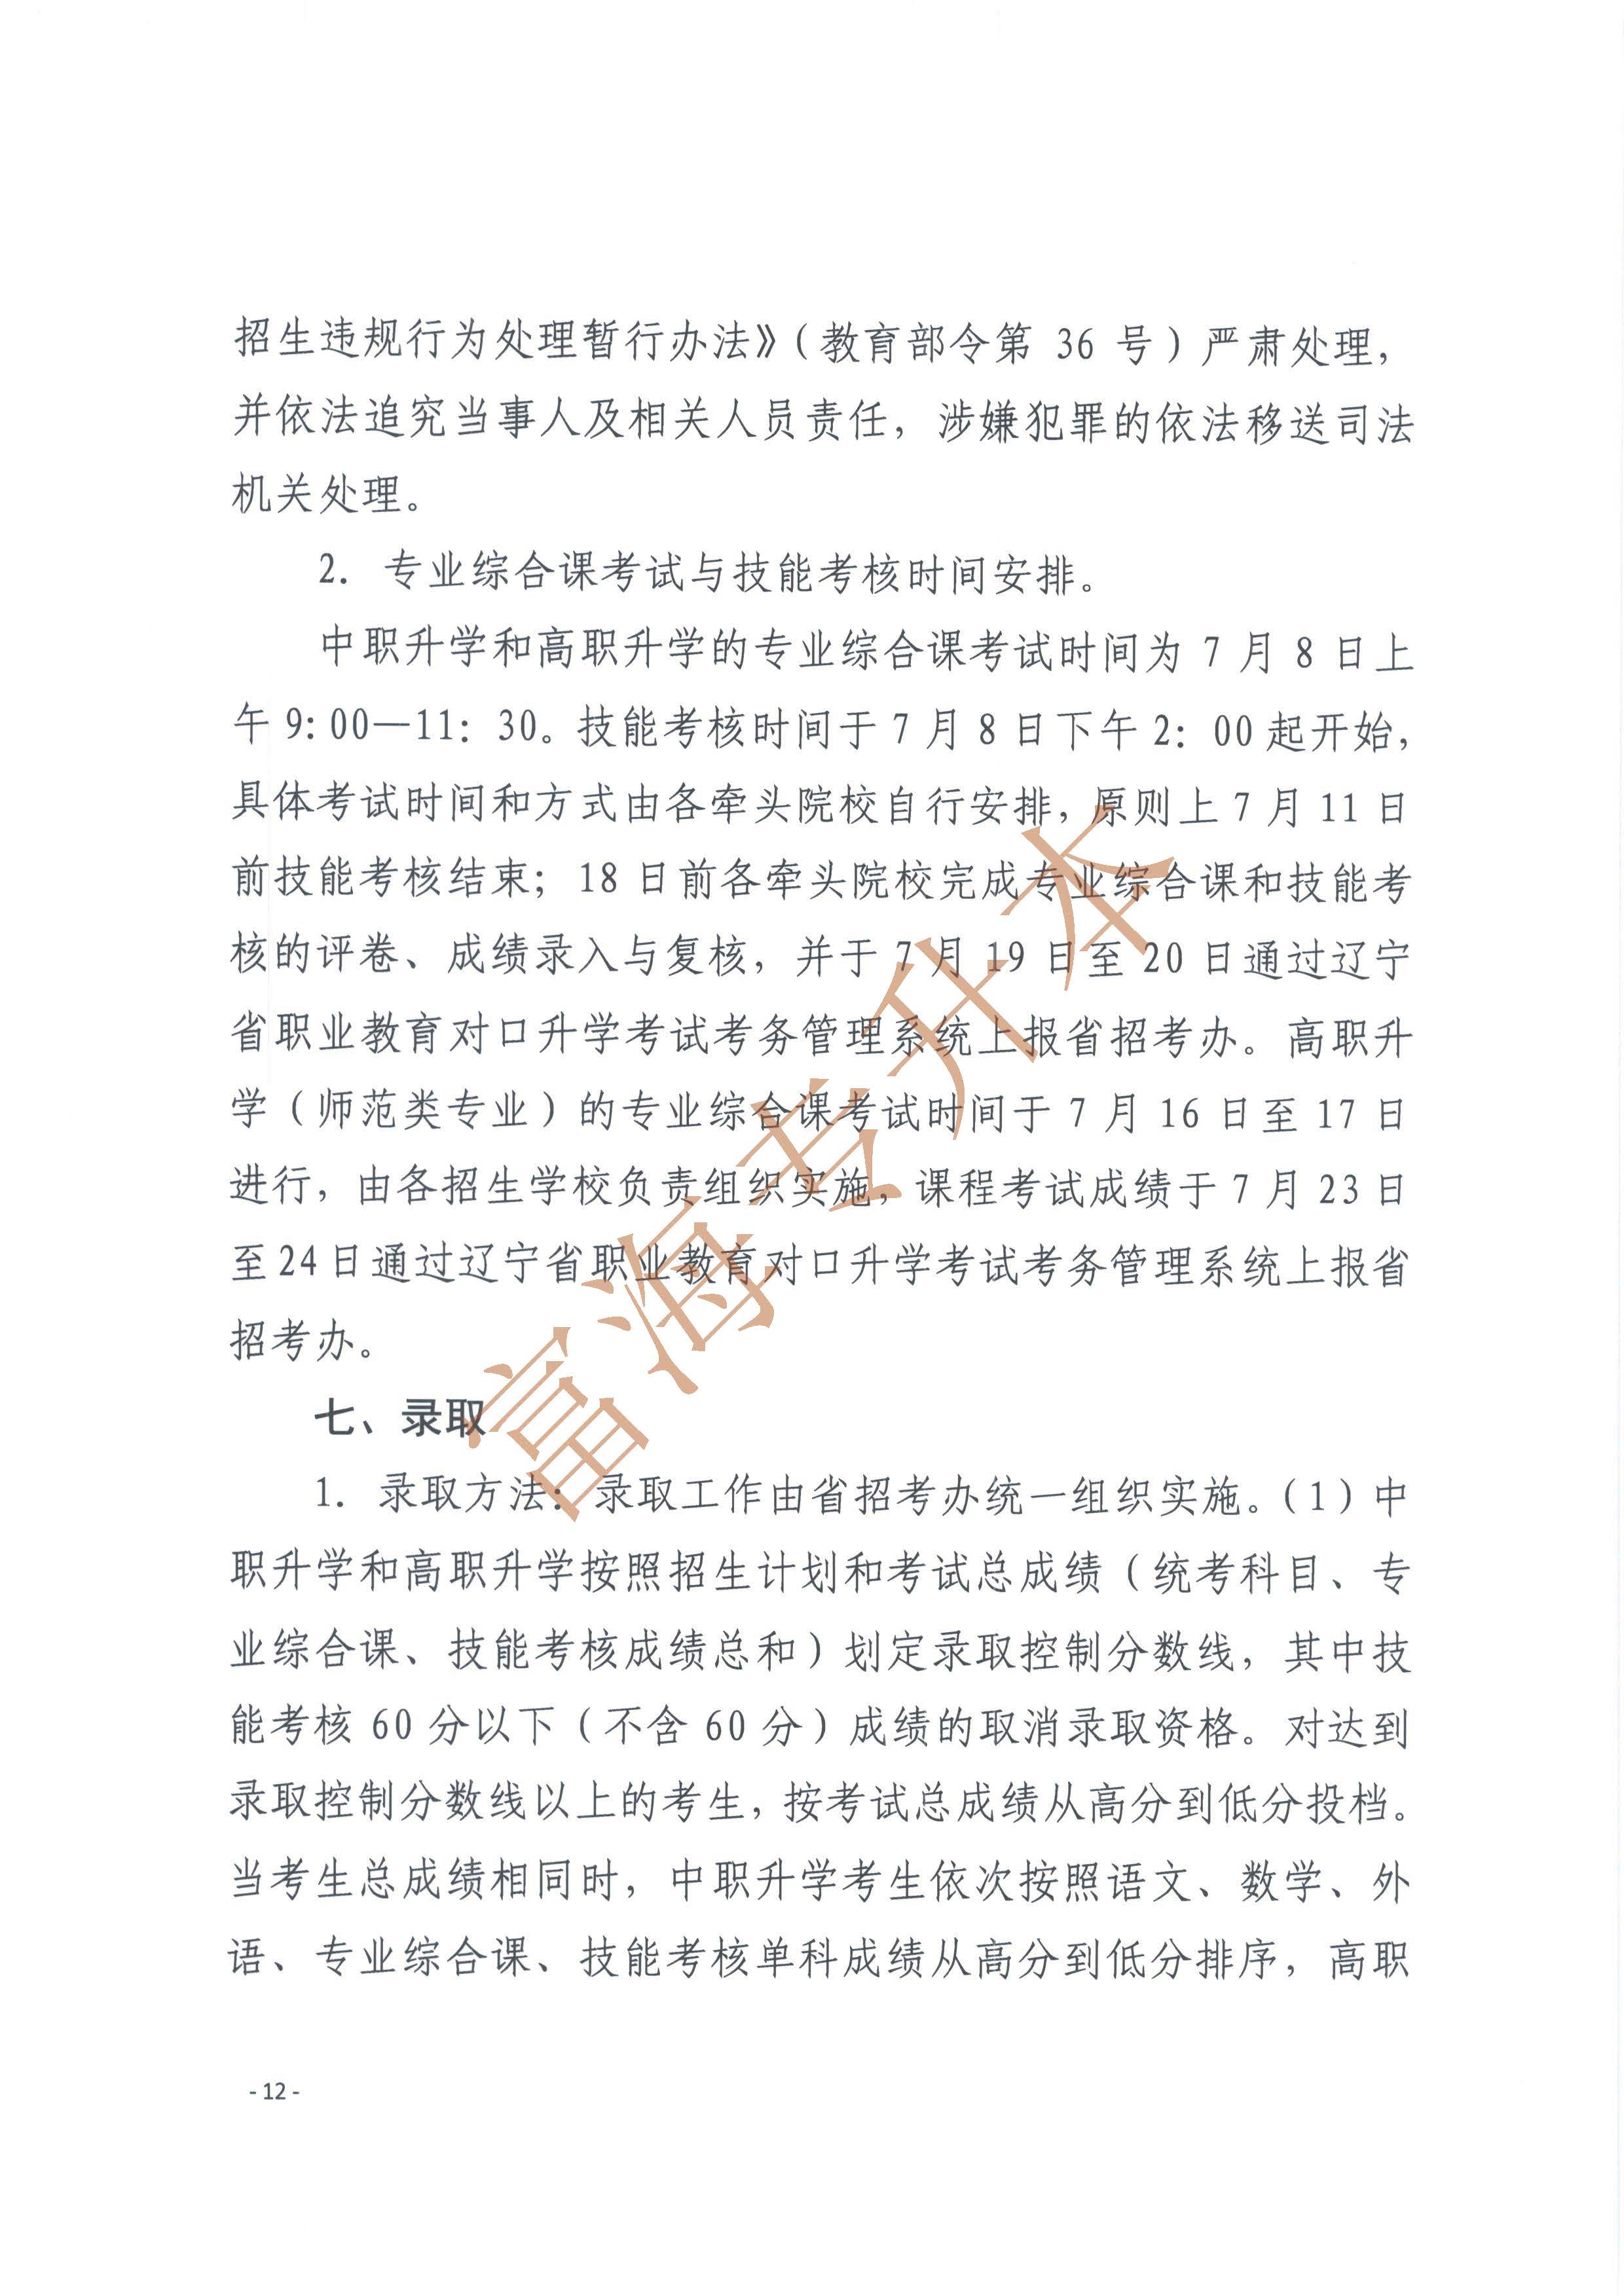 辽宁省2017年职业教育对口升学考试招生工作实施办法的通知12